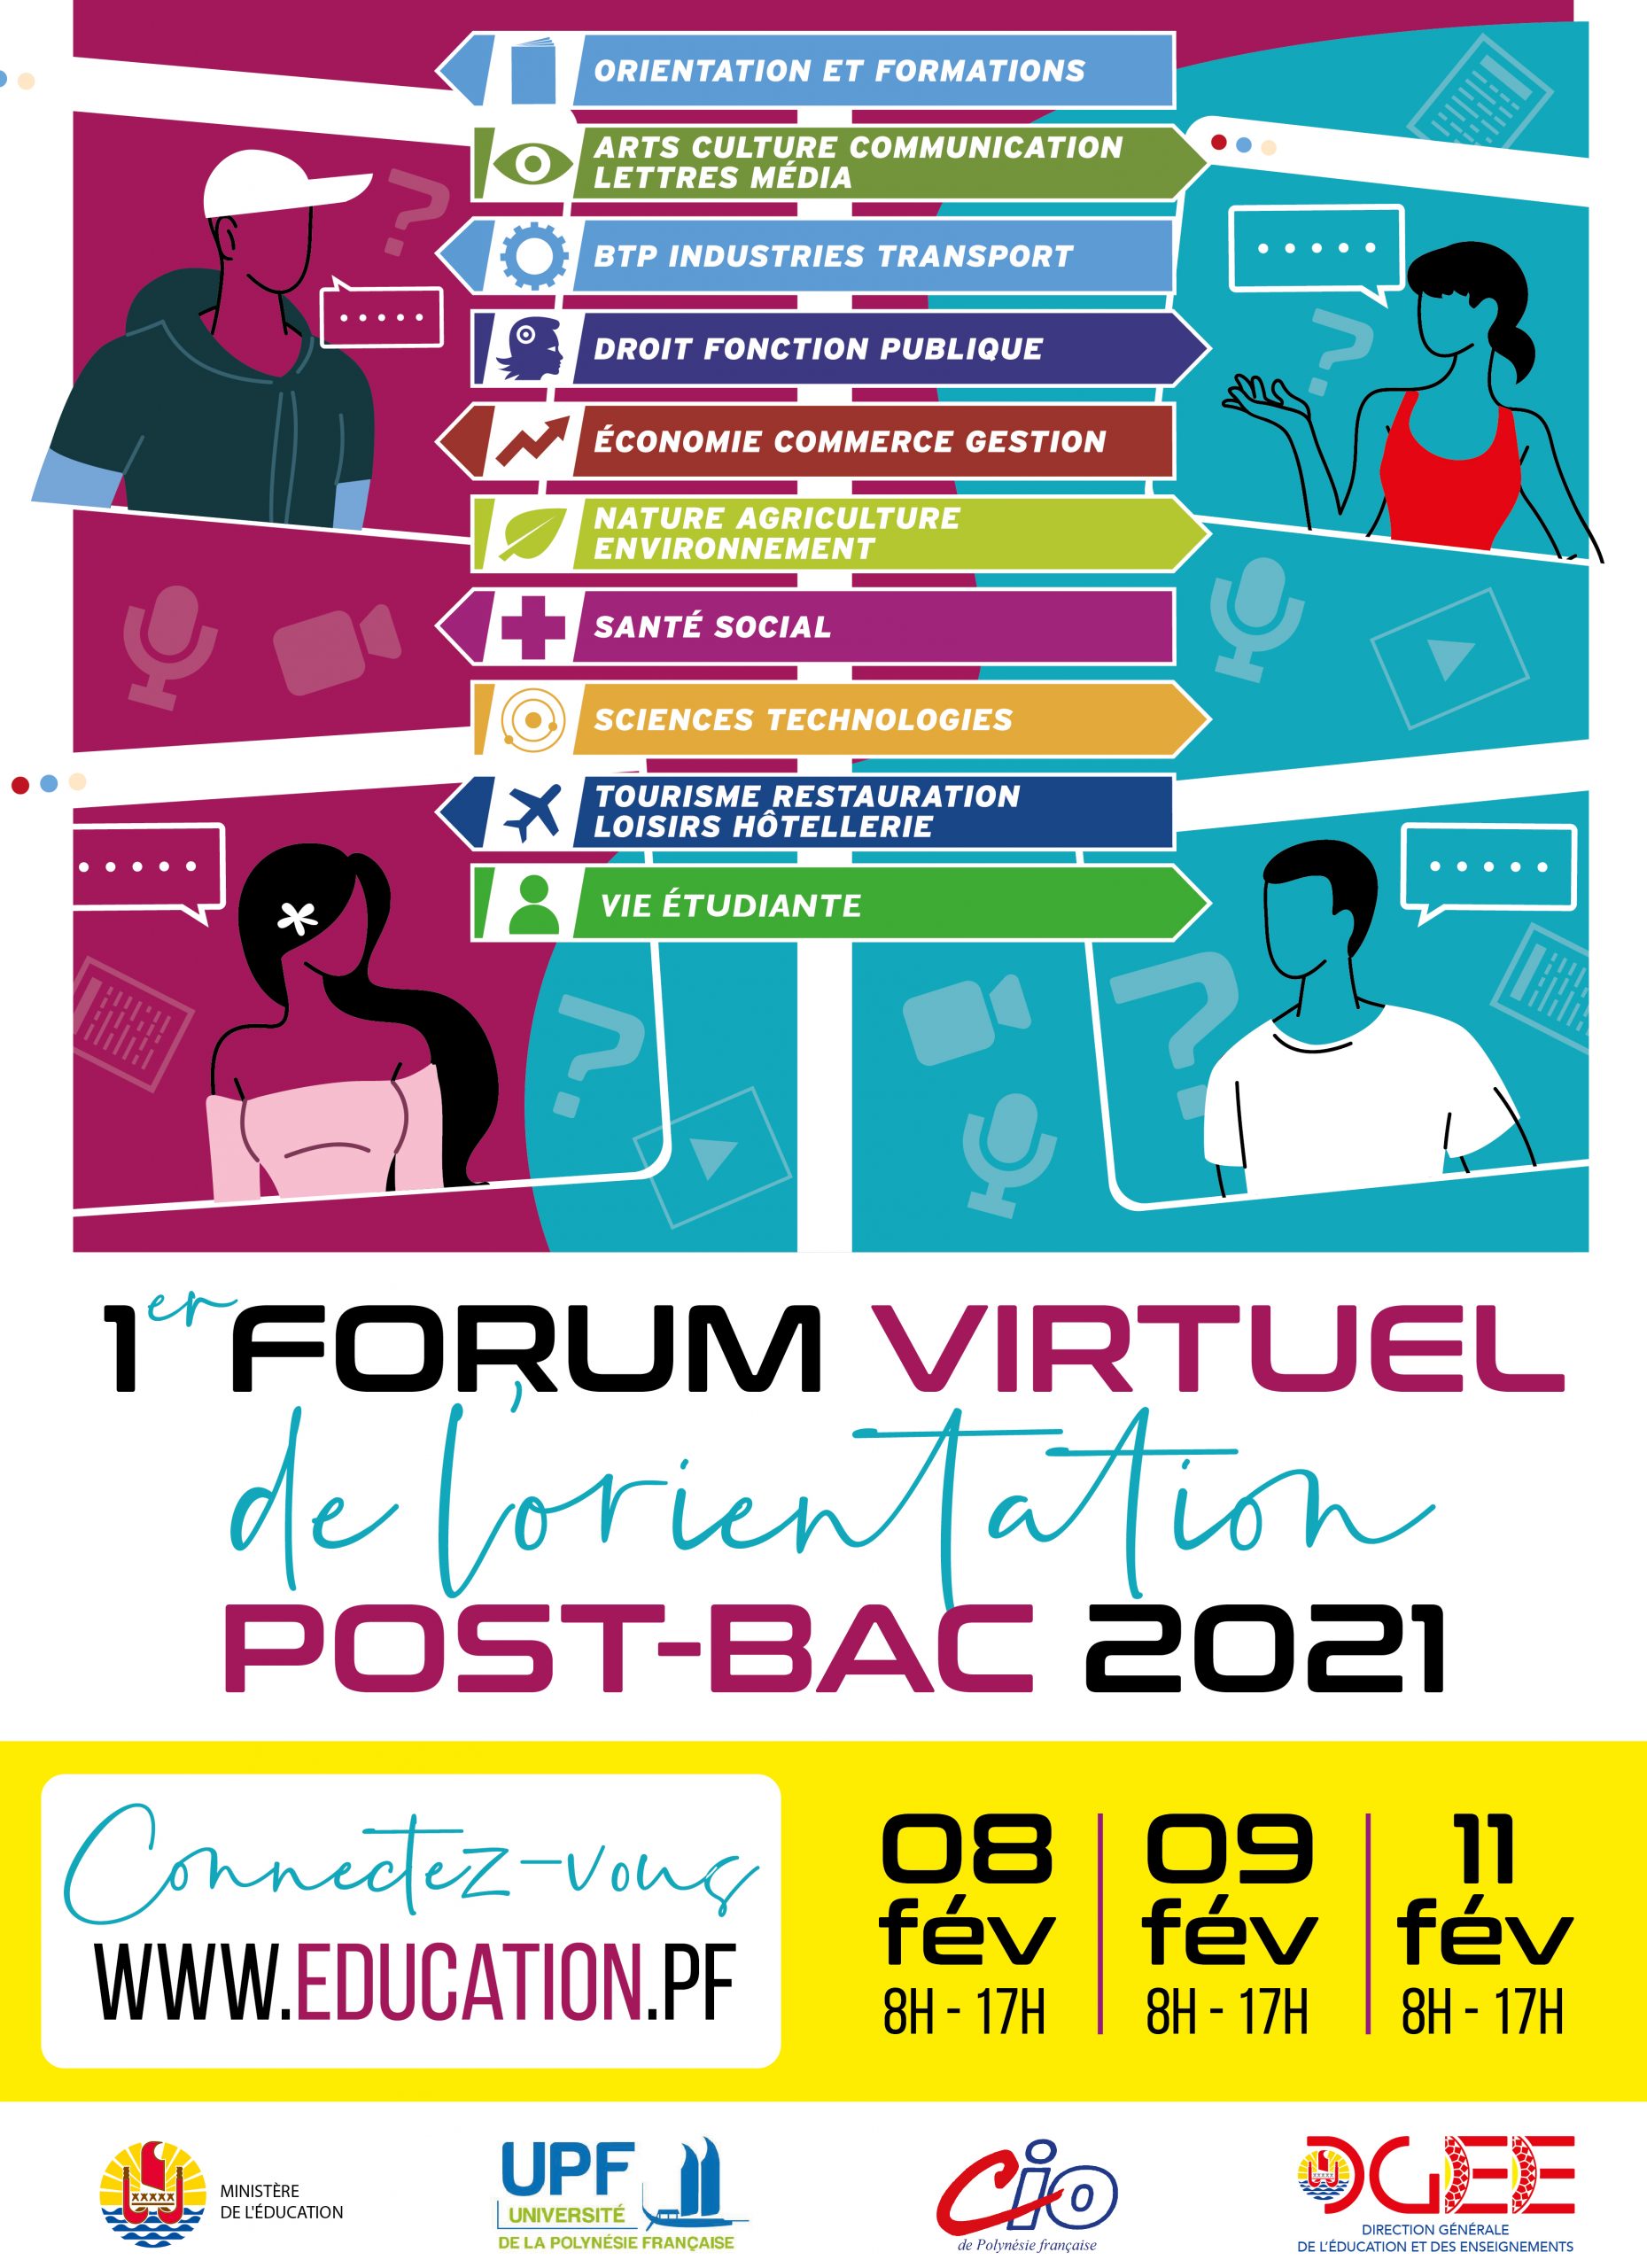 Un forum virtuel pour peaufiner son orientation post-bac